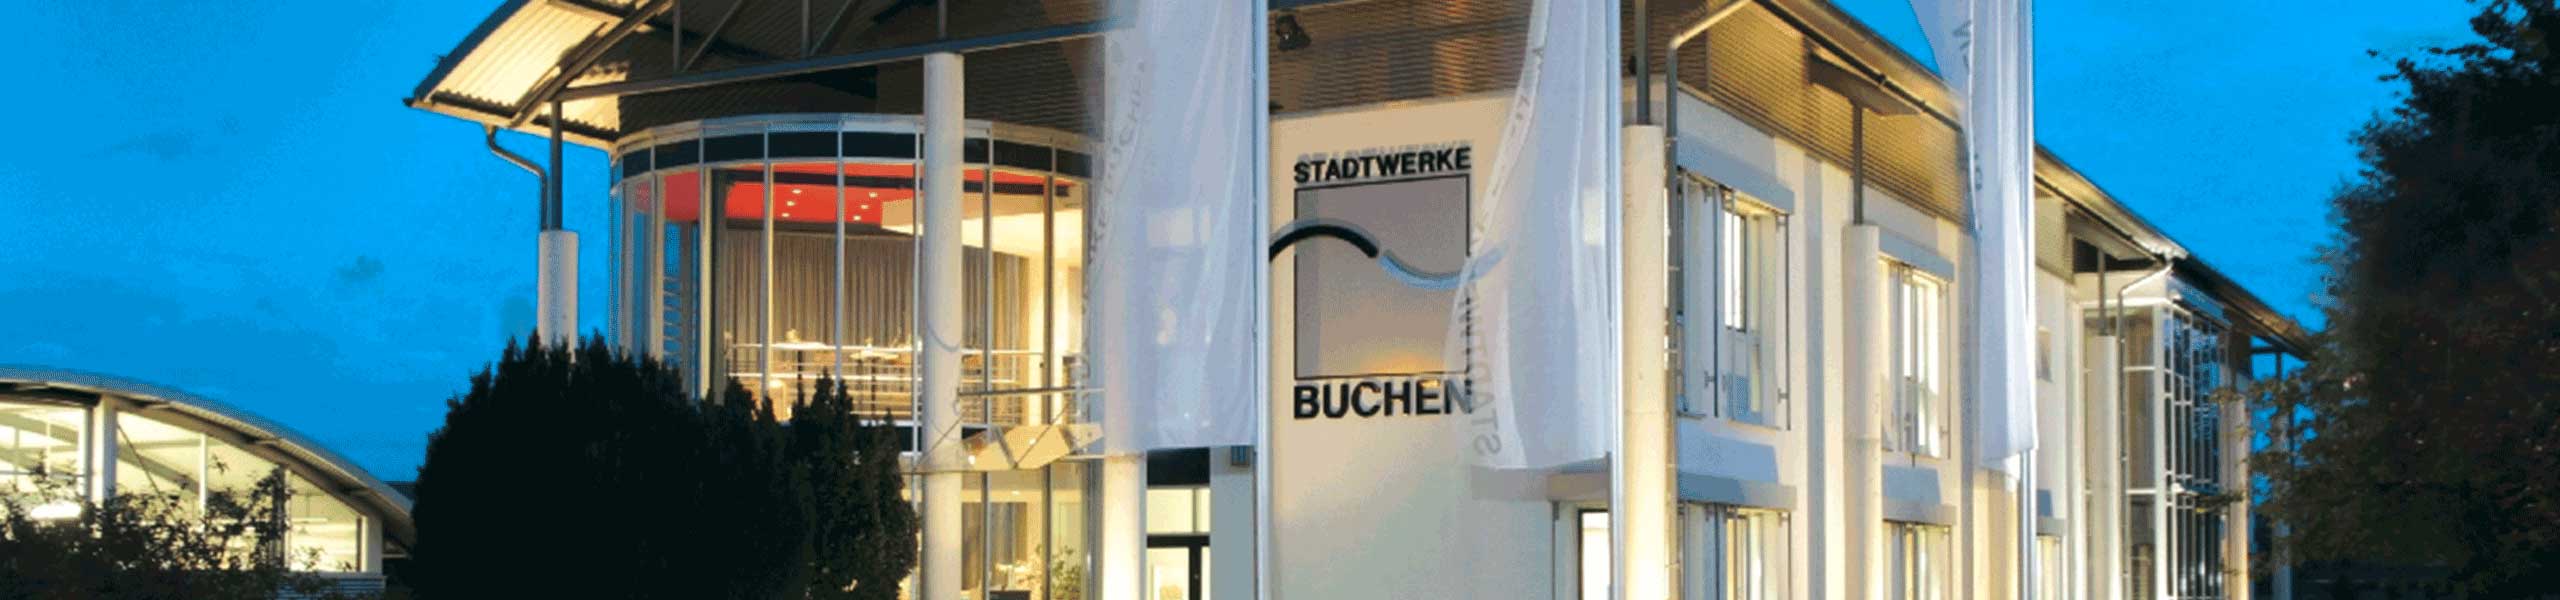 Stadtwerke Buchen GmbH & Co KG - Balkonkraftwerk anmelden